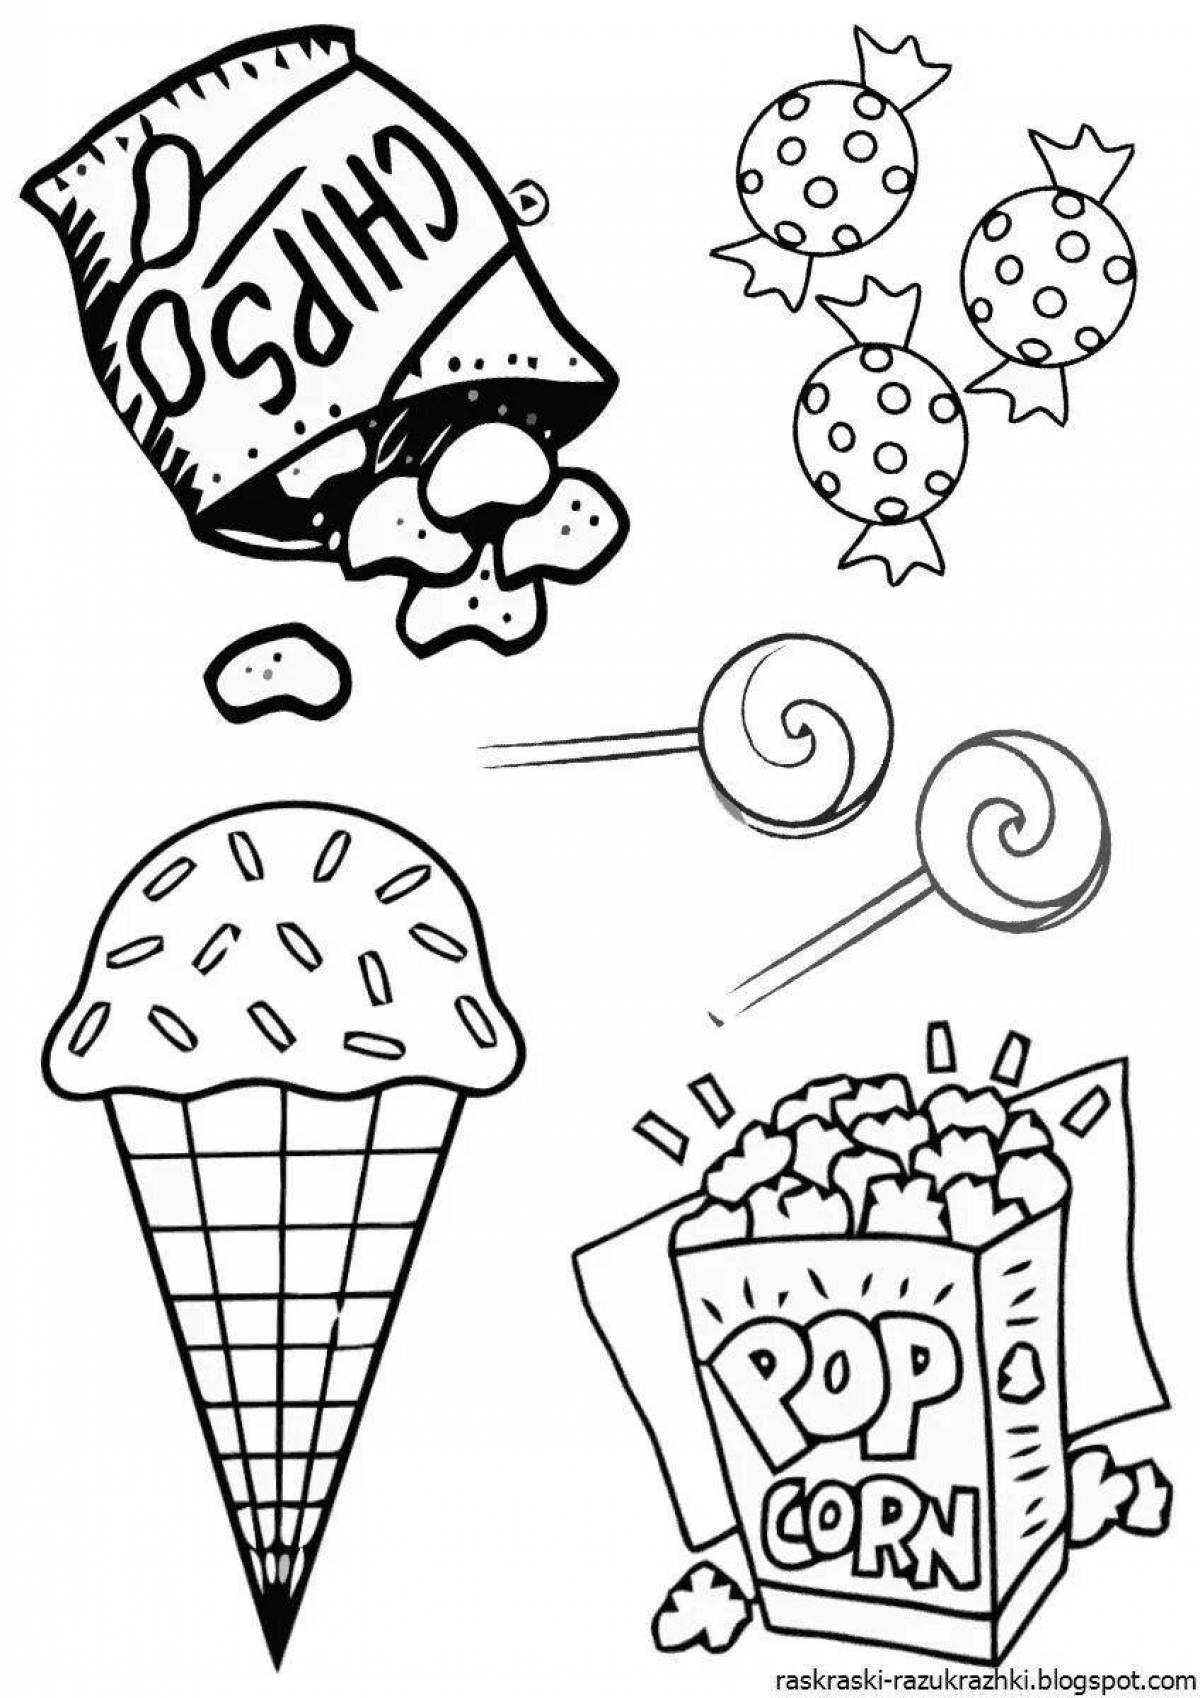 Delicious junk food coloring page